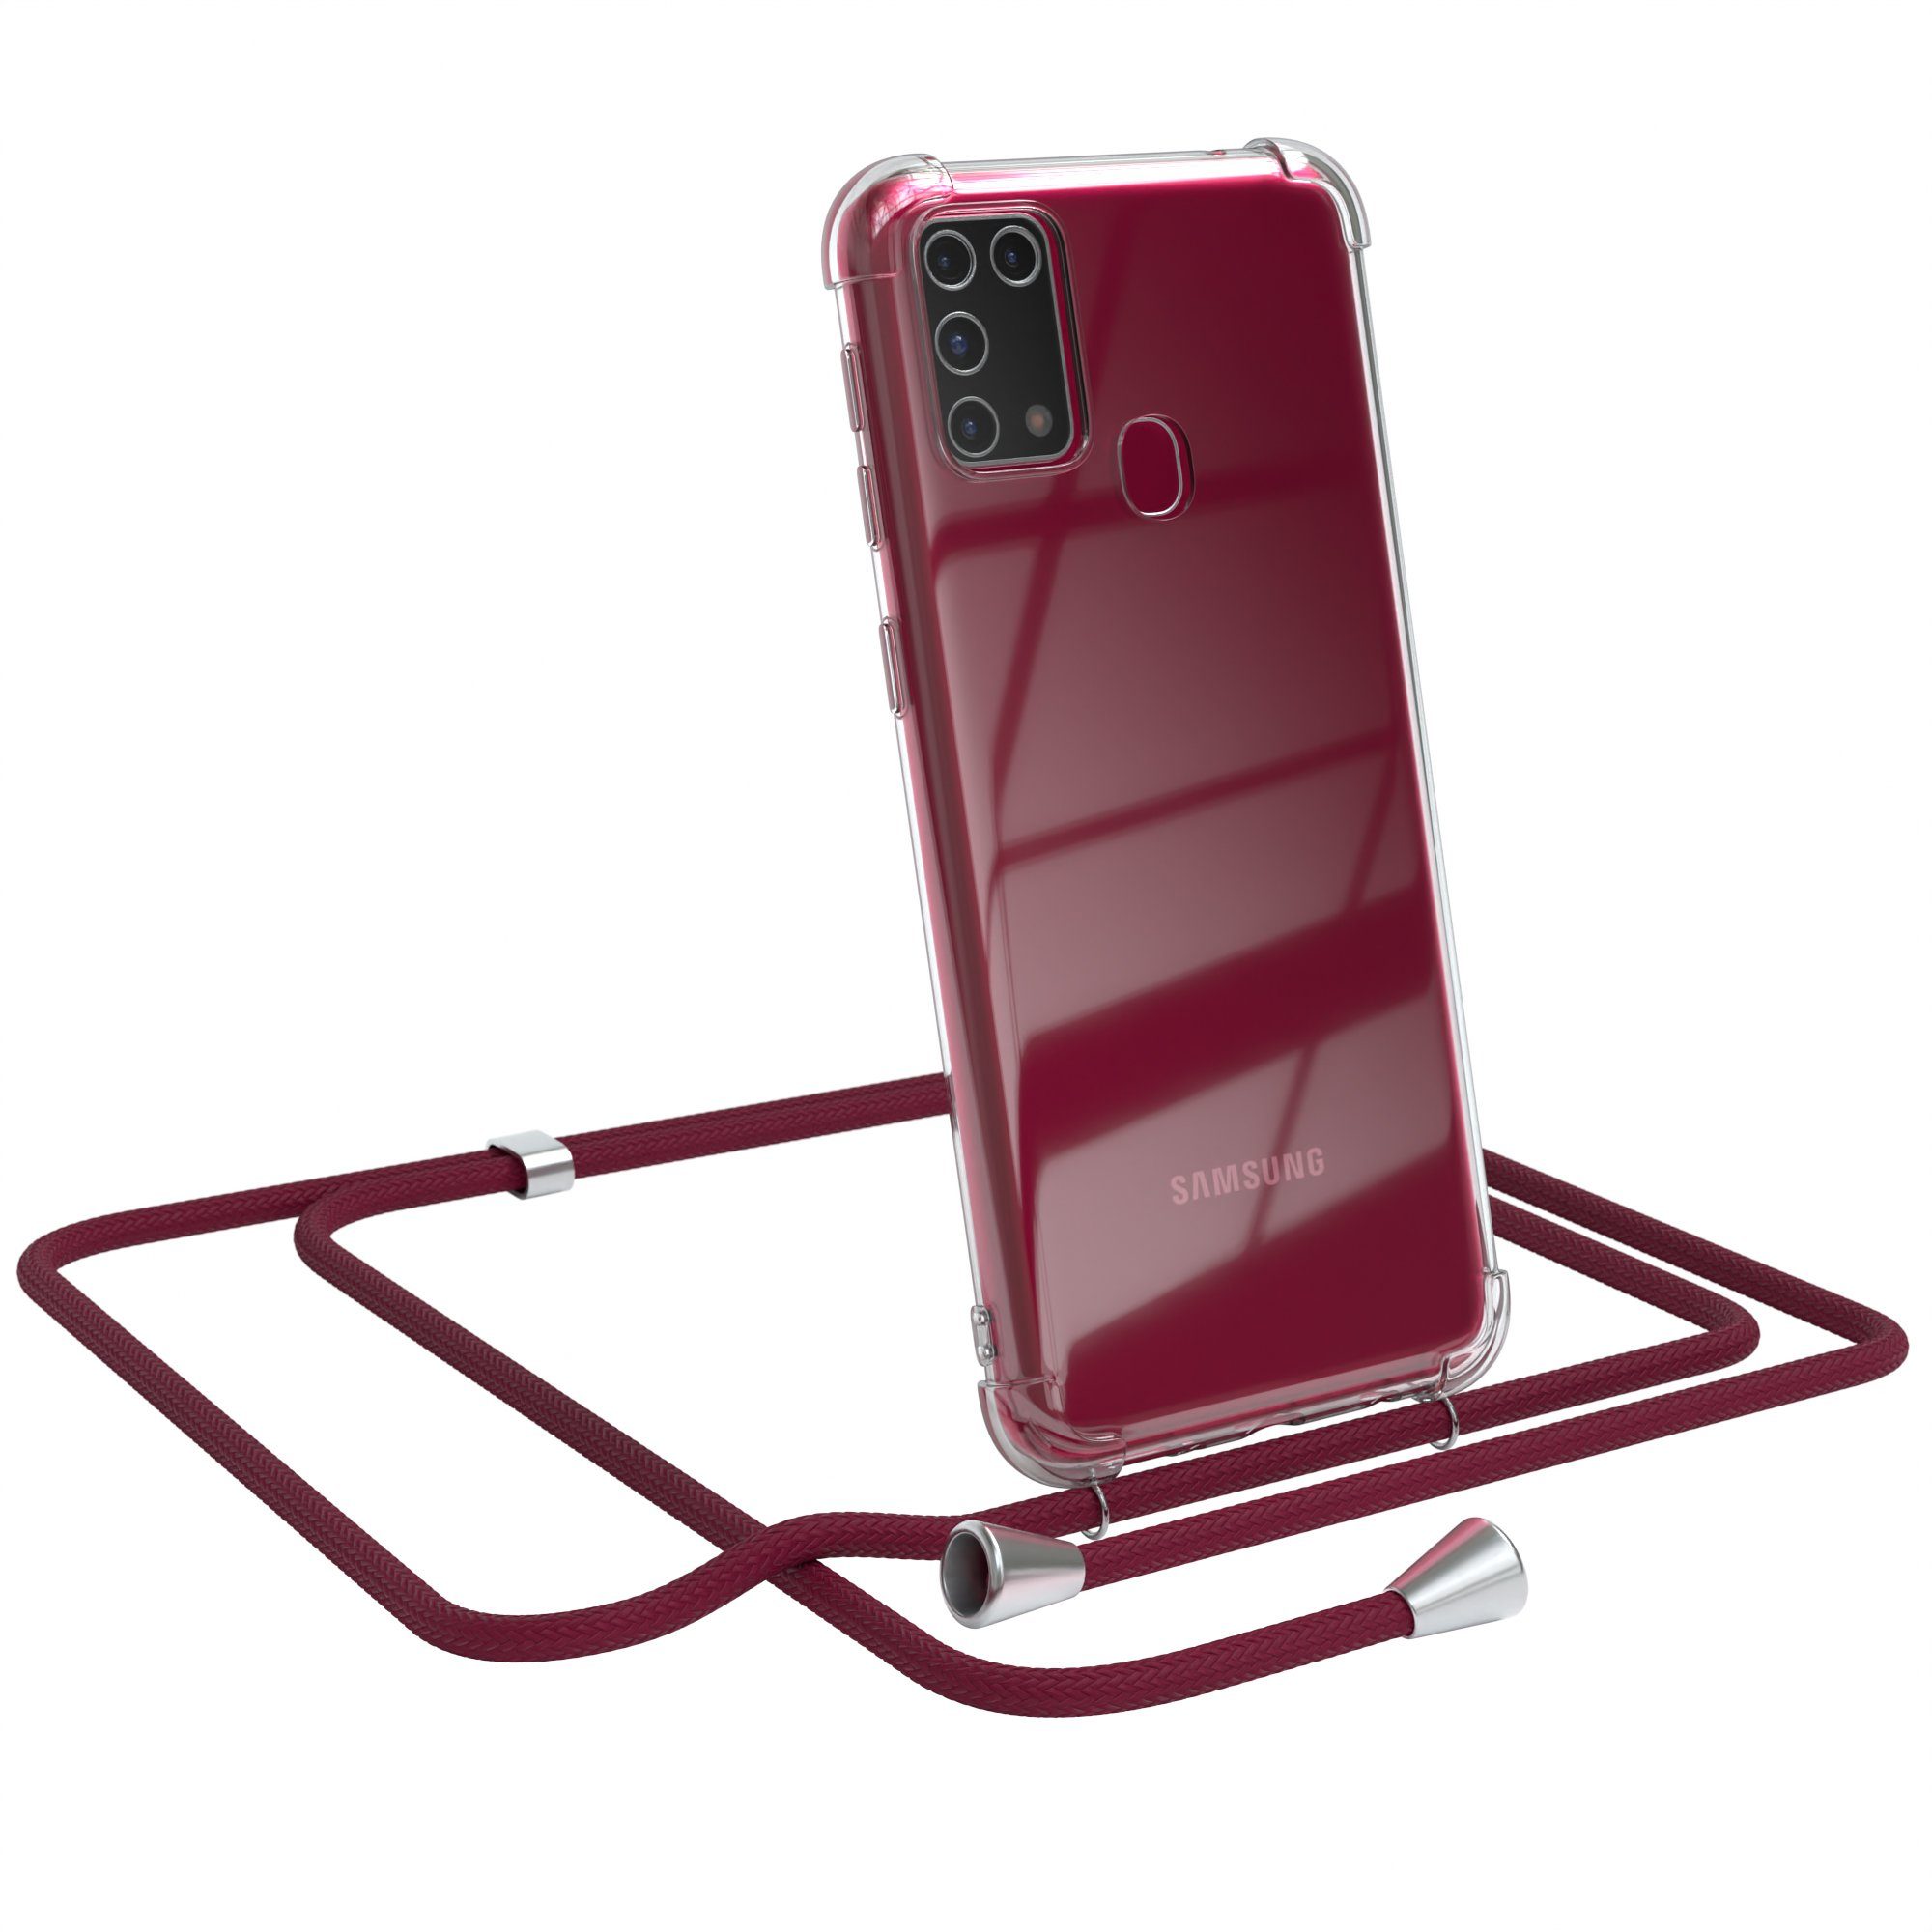 EAZY CASE Handykette Hülle mit Kette für Samsung Galaxy M31 6,4 Zoll,  Silikonhülle durchsichtig mit Umhängeband Handytasche Bordeaux Rot